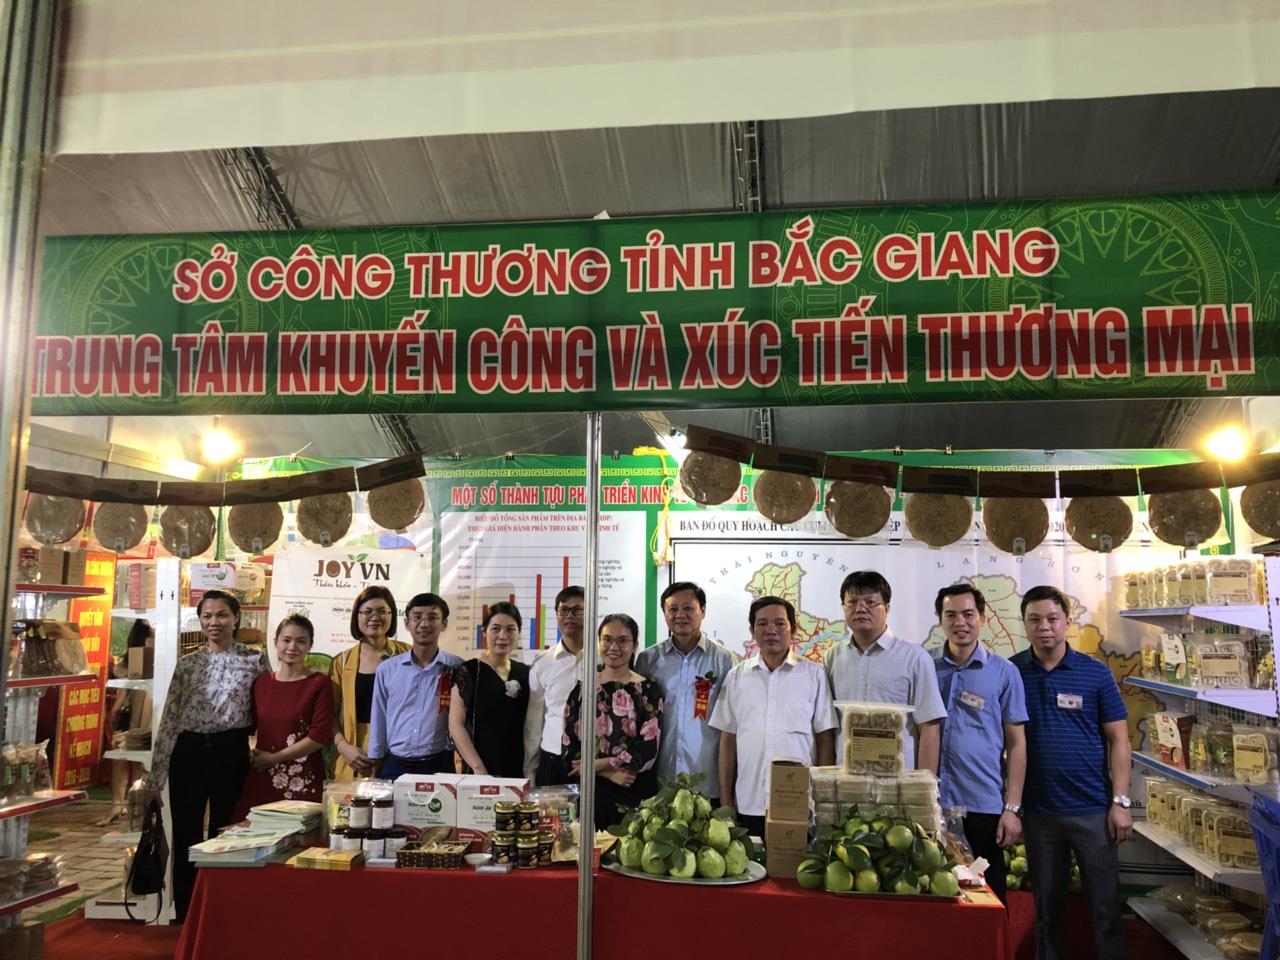 Trung tâm Khuyến công và Xúc tiến thương mại Bắc Giang tham dự Hội chợ Công Thương đồng bằng sông Hồng – Bắc Ninh 2019